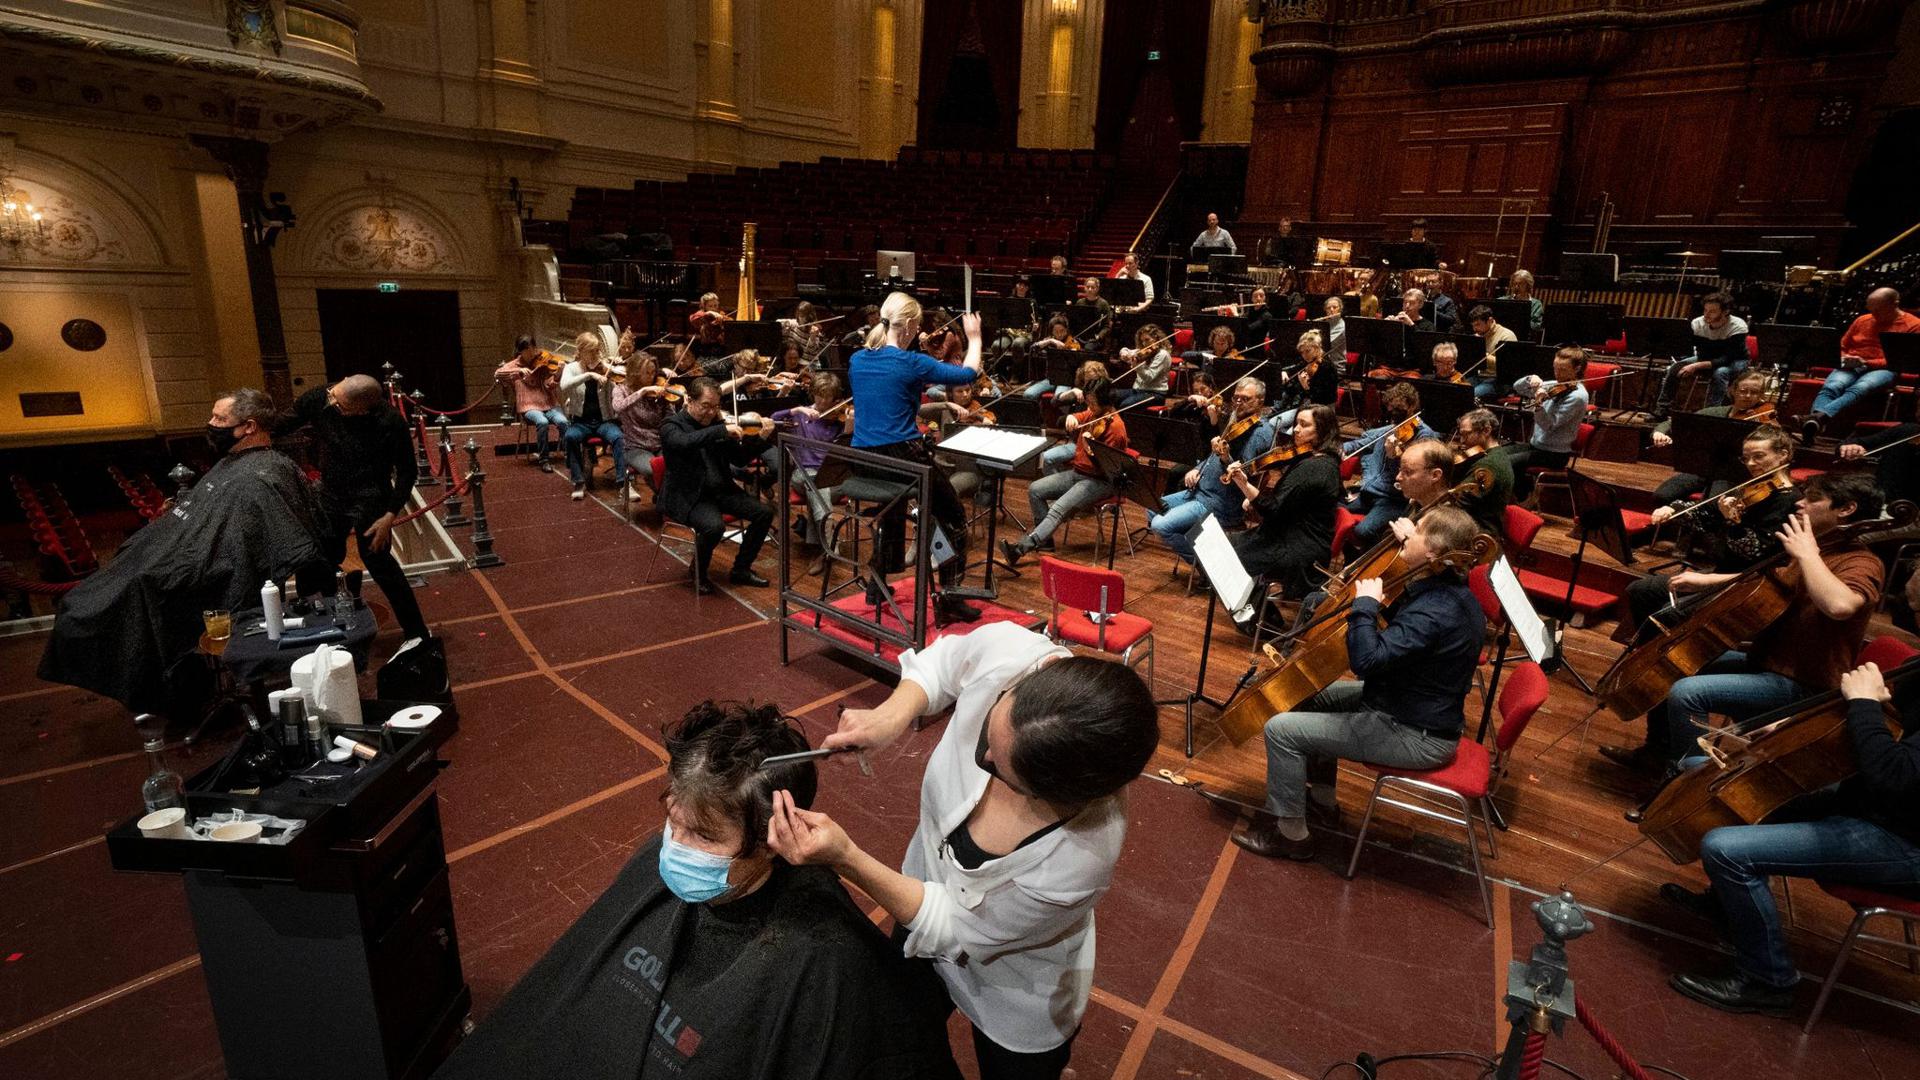 Ein neuer Schnitt im Concertgebouw auf der Bühne – und die Musik spielt dazu.